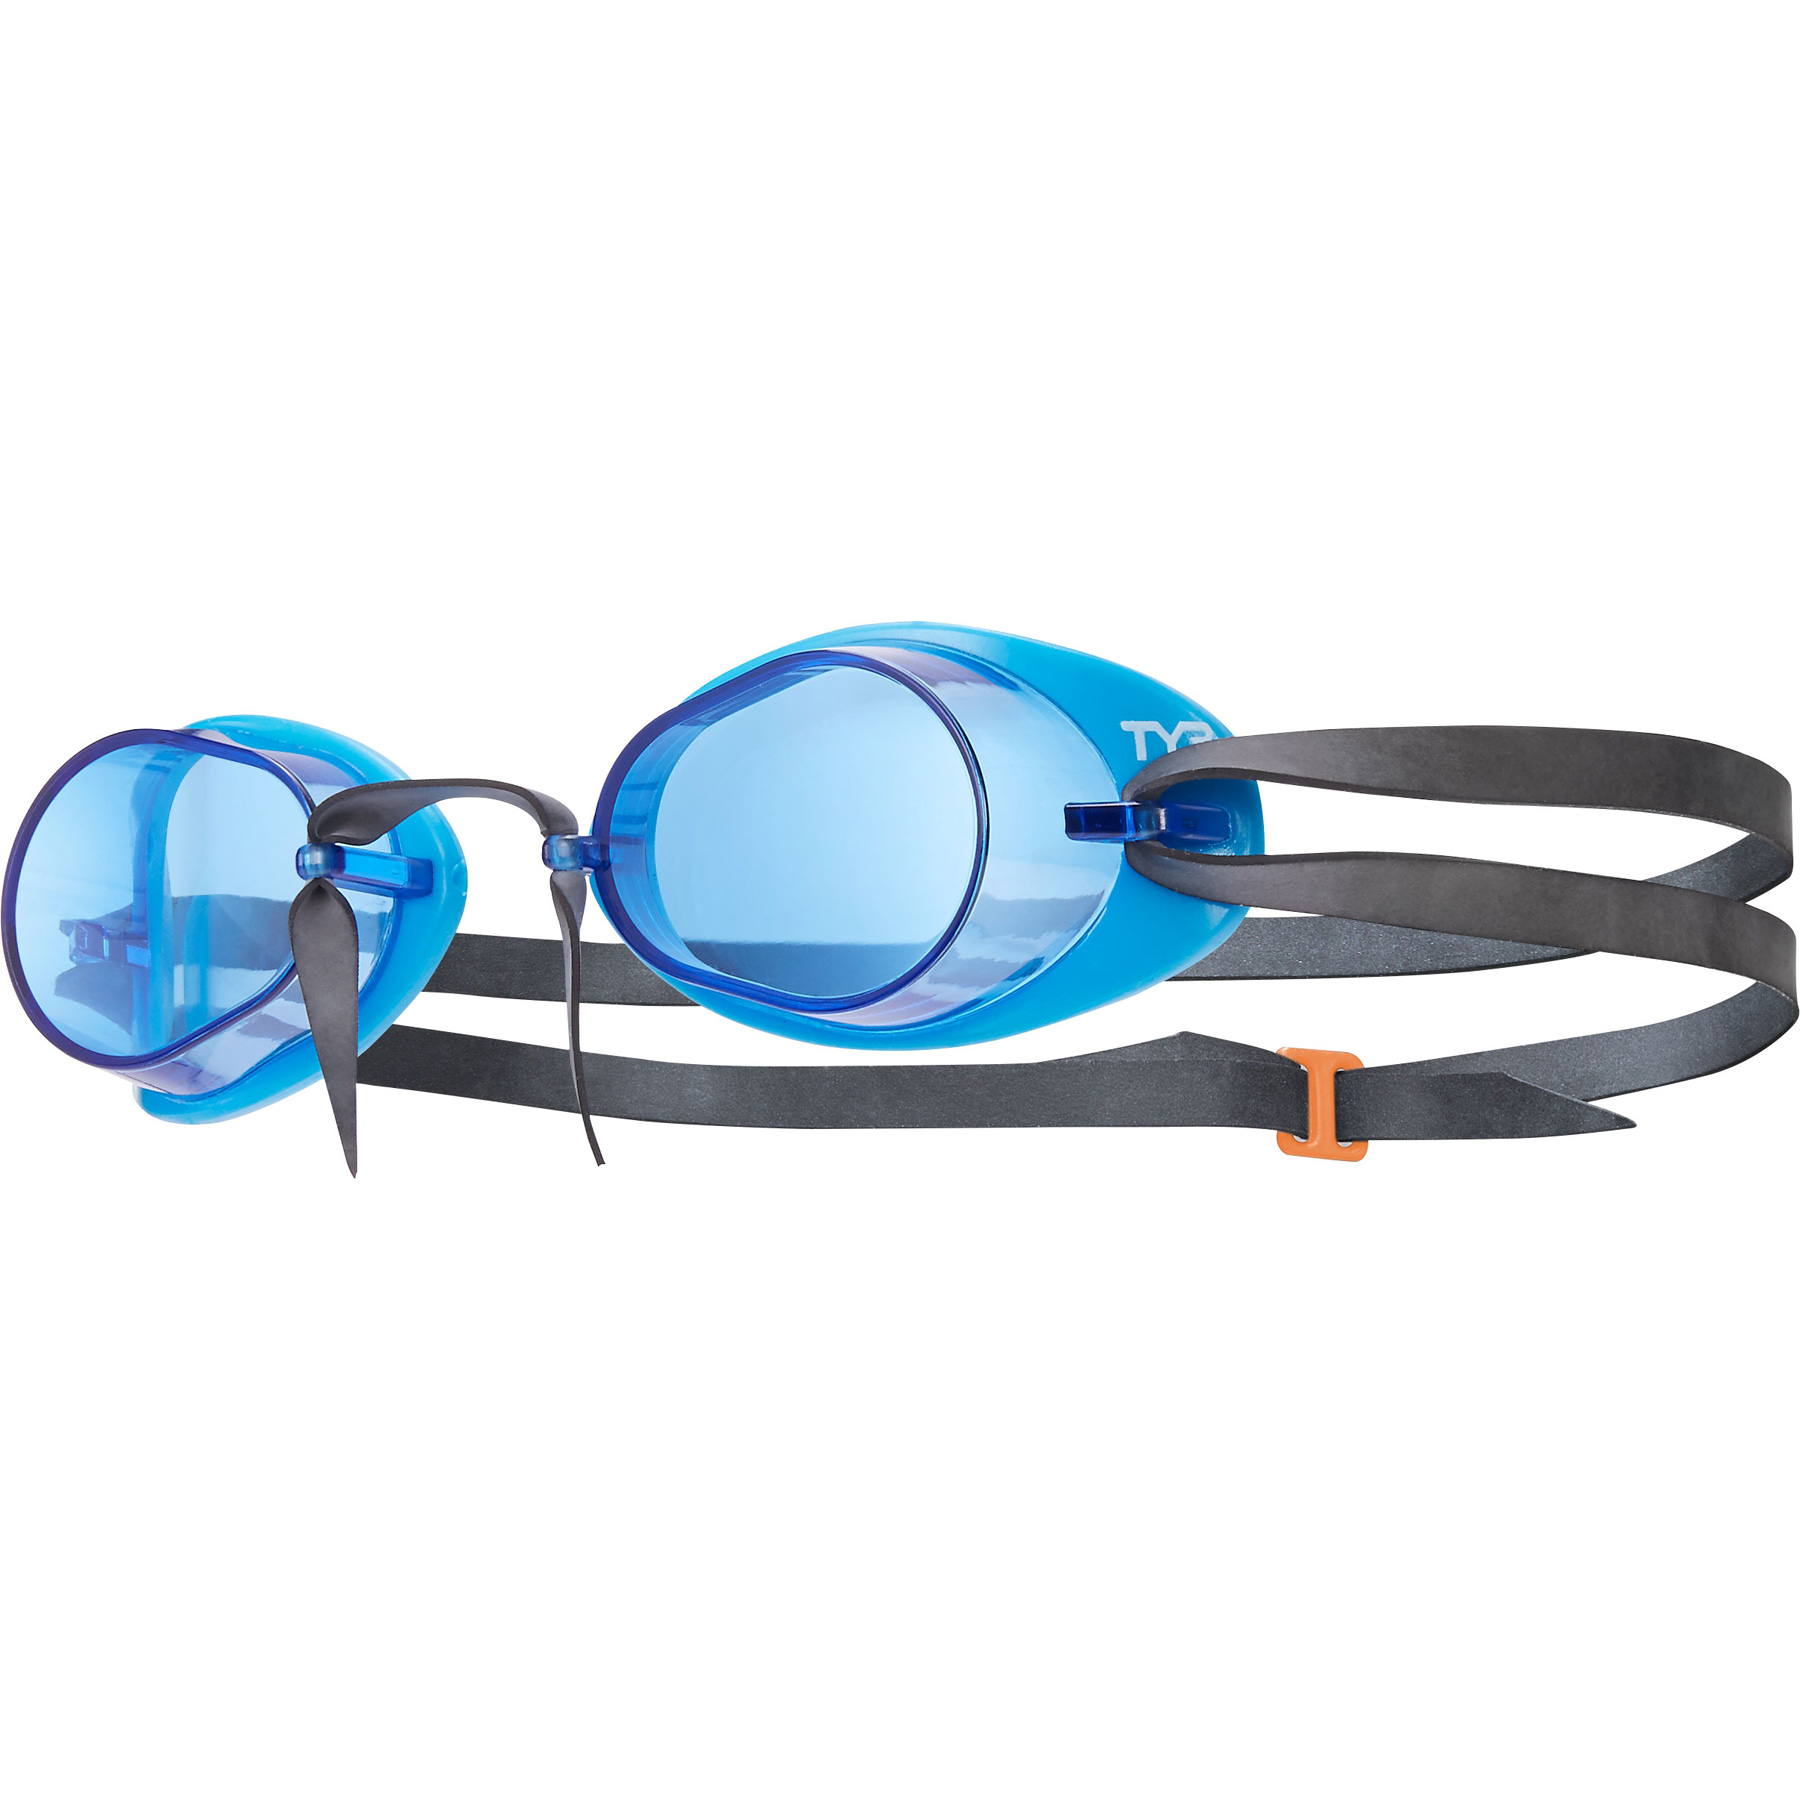 Productfoto van TYR Socket Rocket 2.0 Zwembril - blauw/blauw/zwart